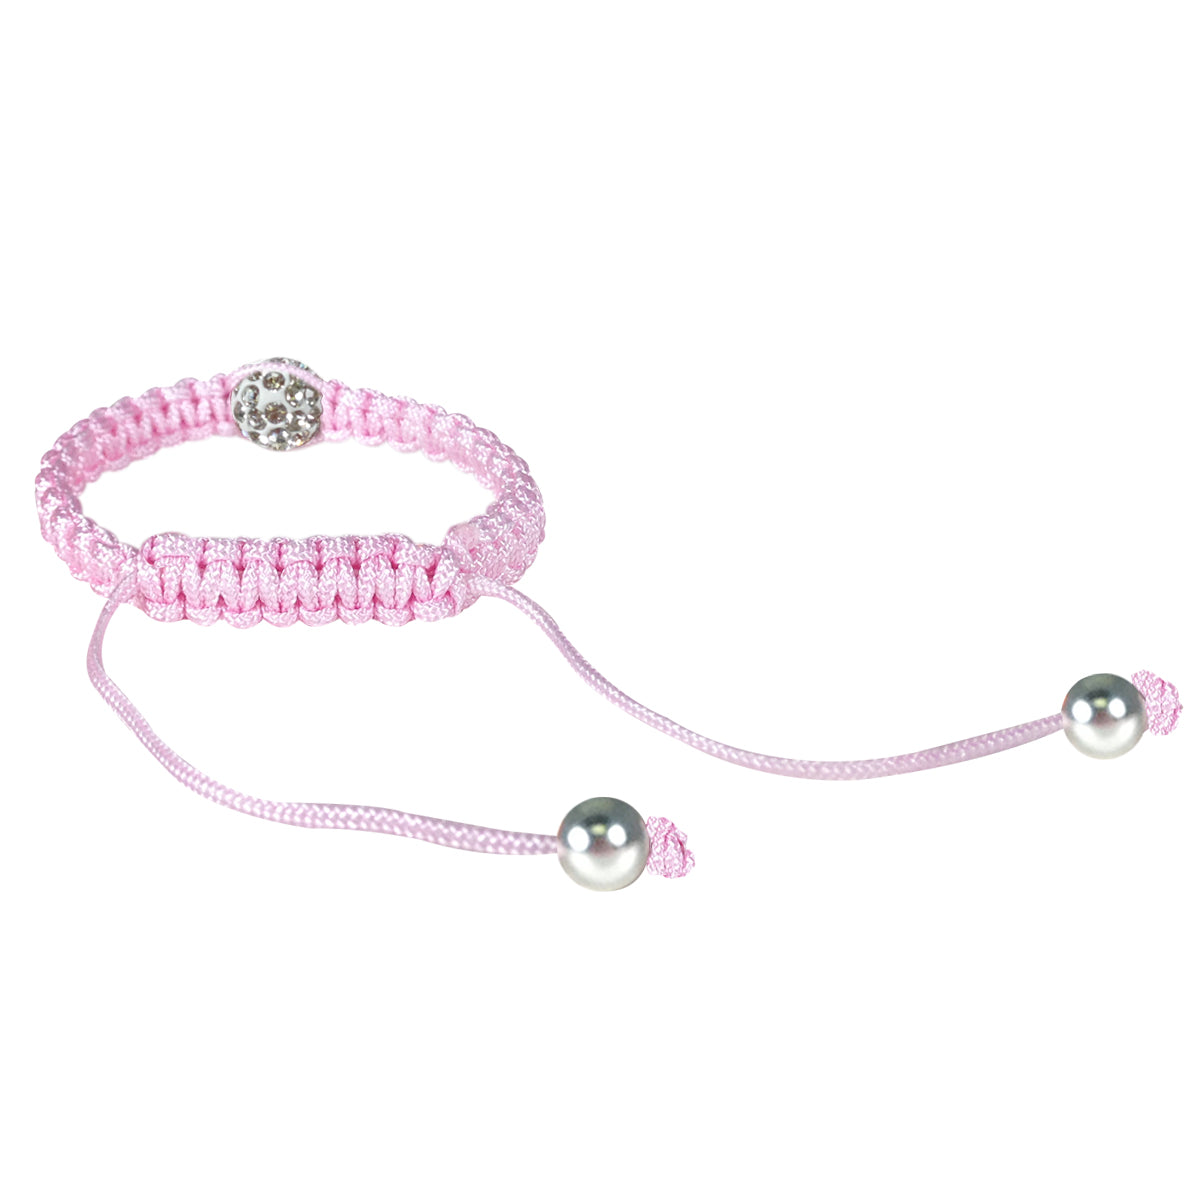 Children's Single Bead Cord Bracelet